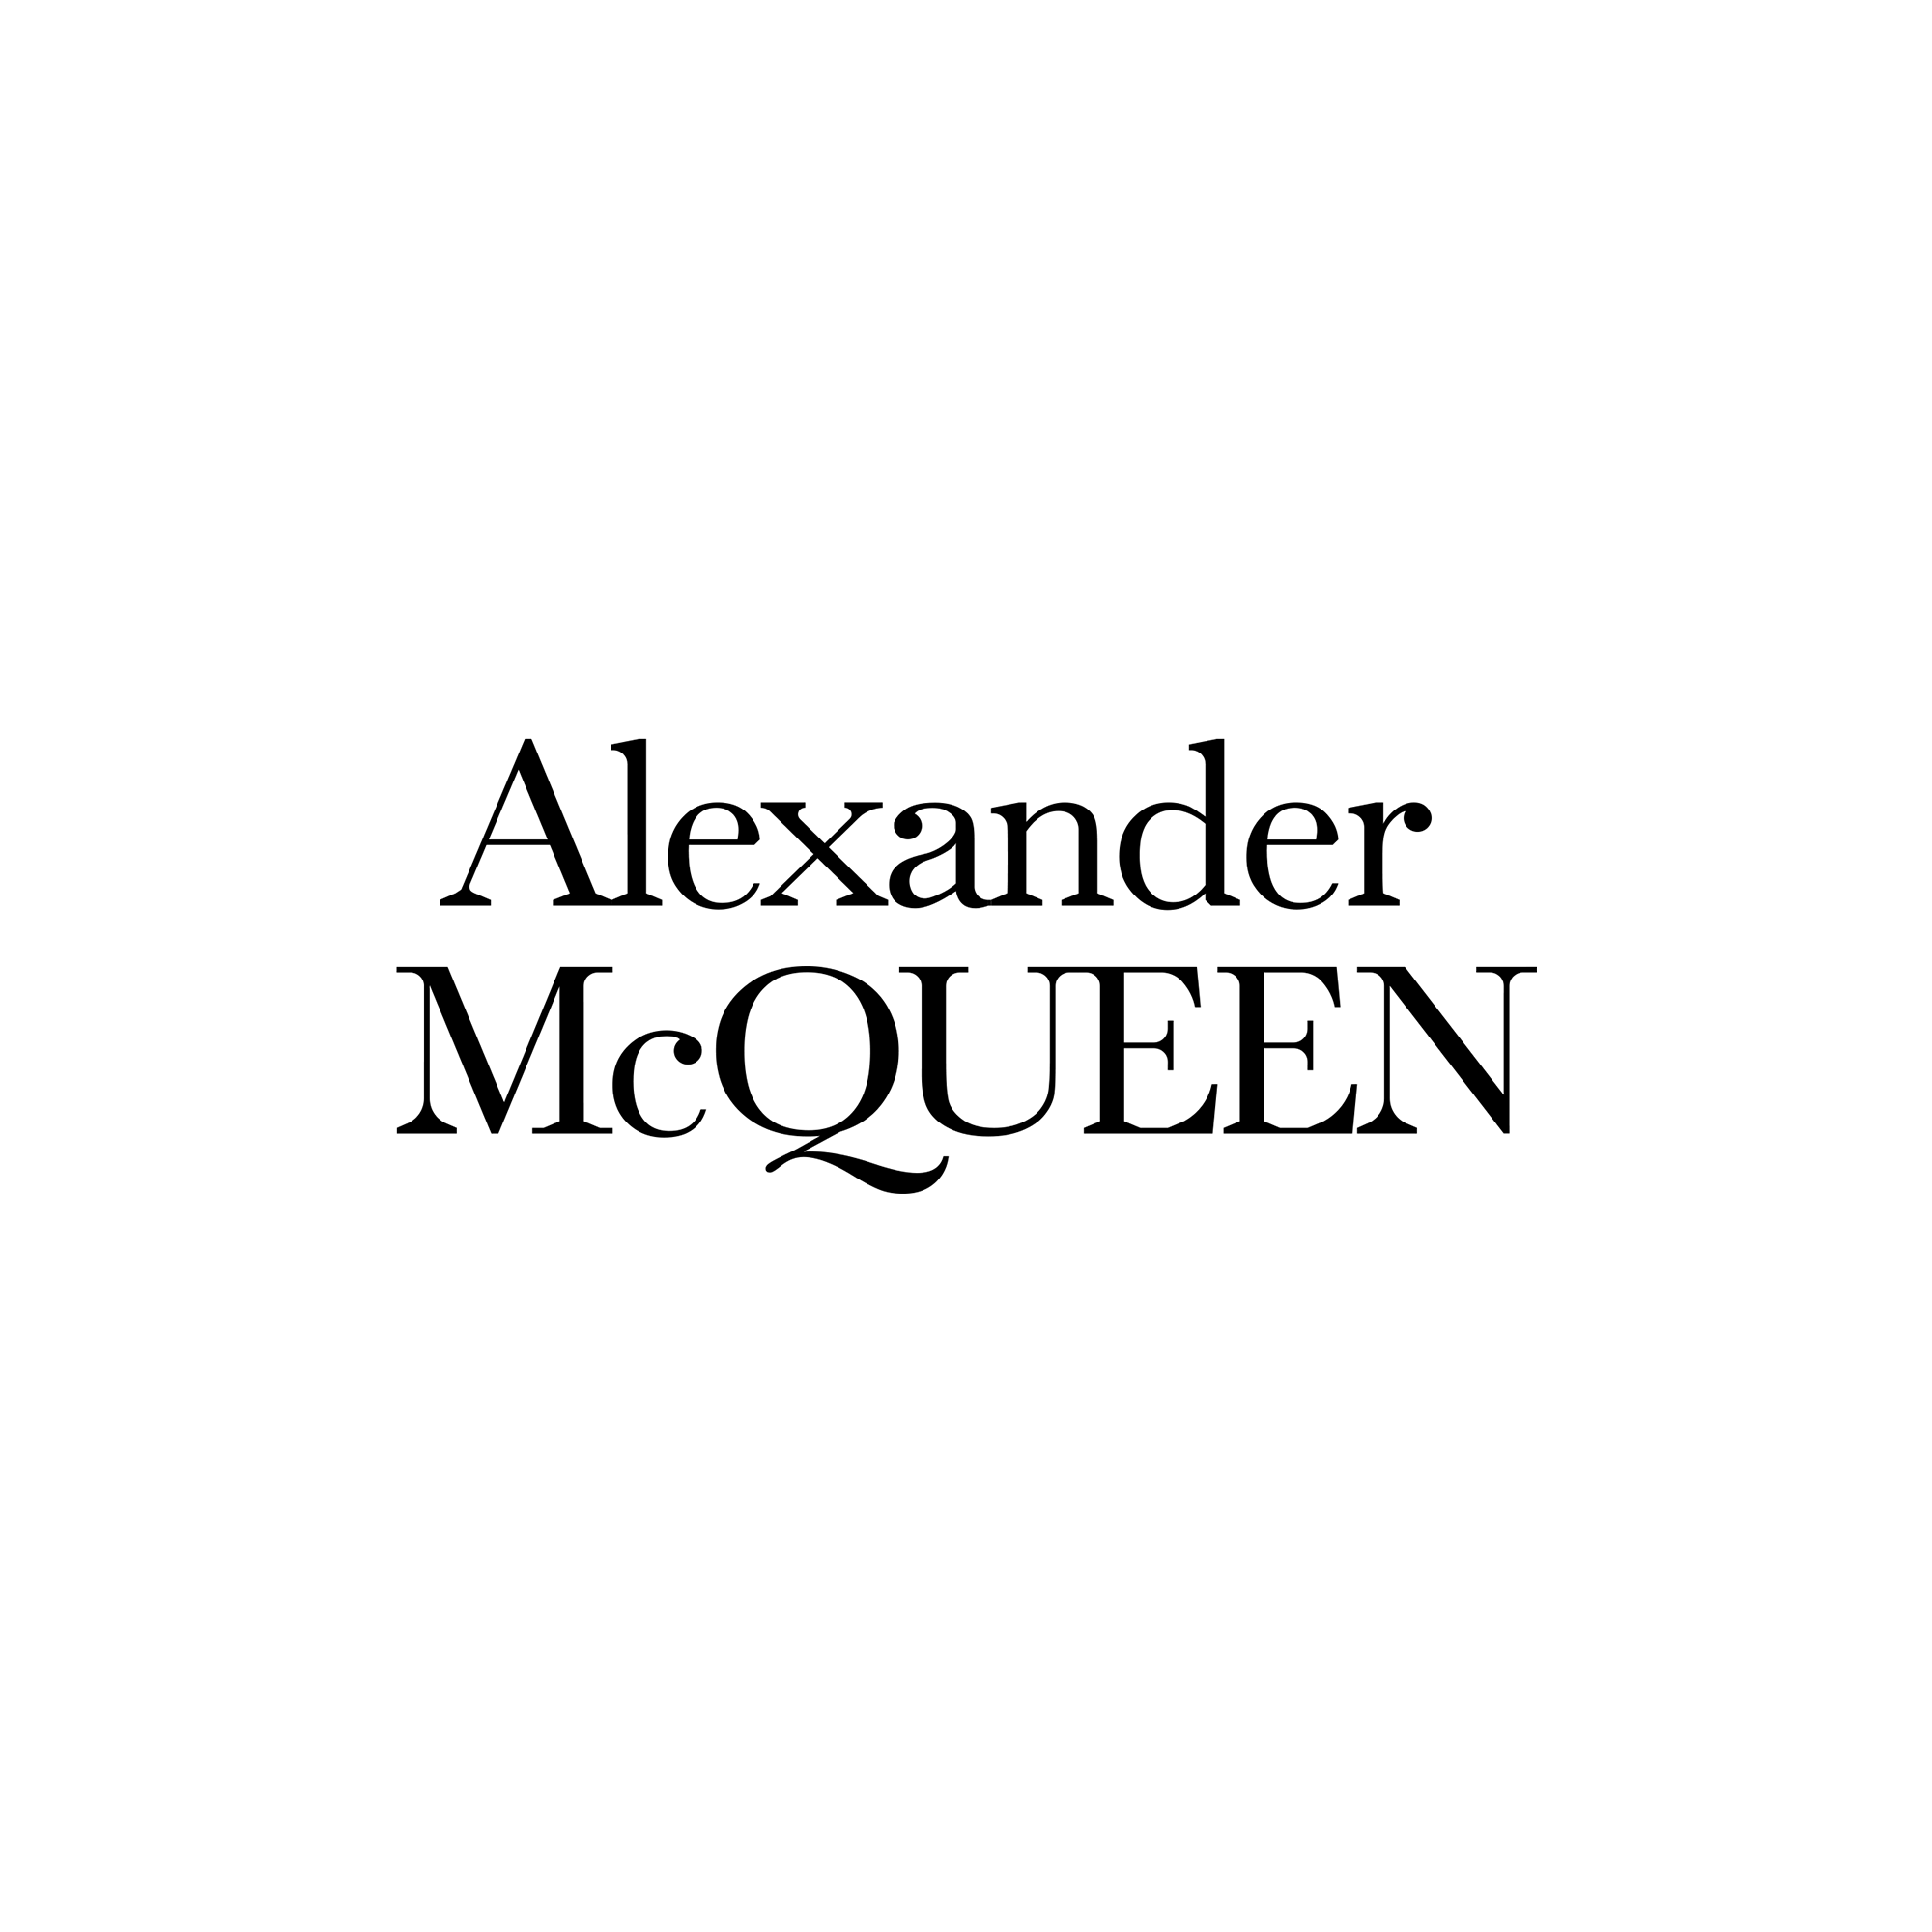 Las Vegas: Alexander McQueen store opening